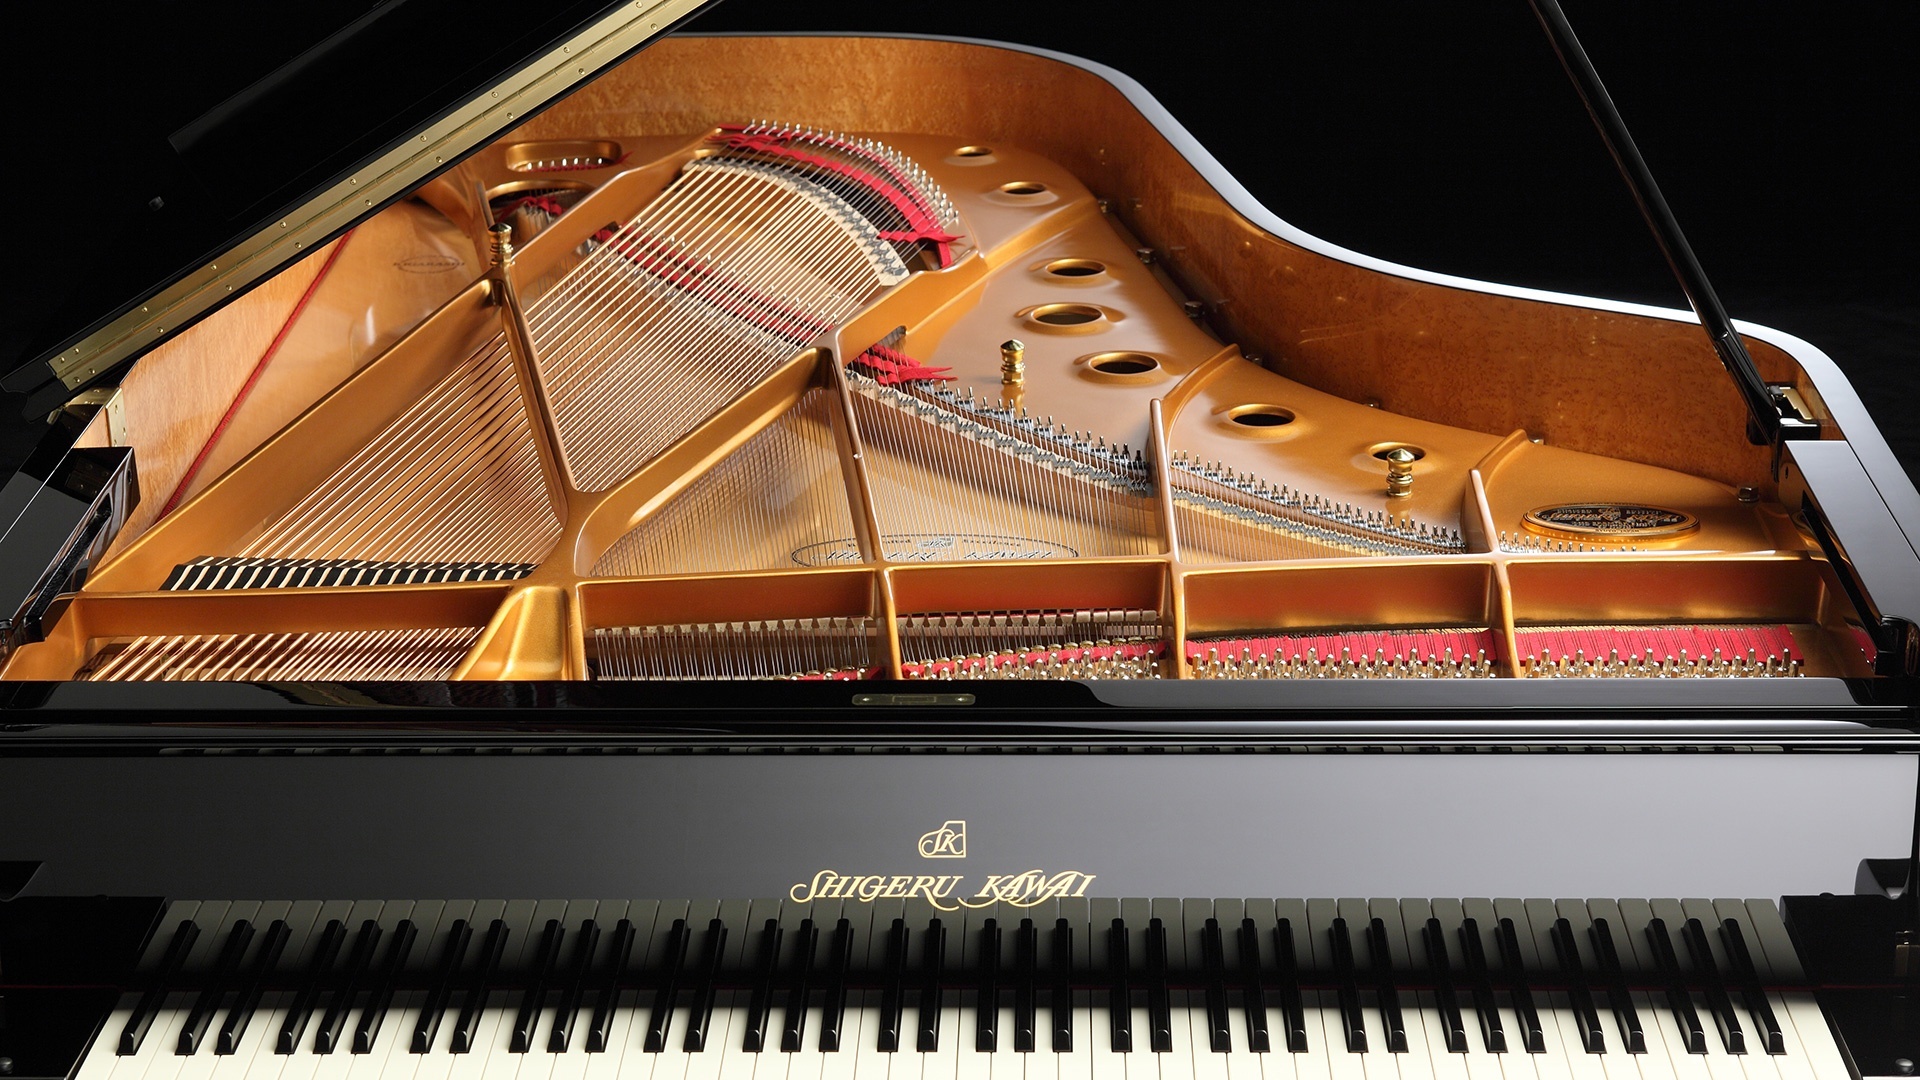 Fortepiano: Shigeru Kawai Pianos Company, Japan Piano Builders Since 1946. 1920x1080 Full HD Wallpaper.